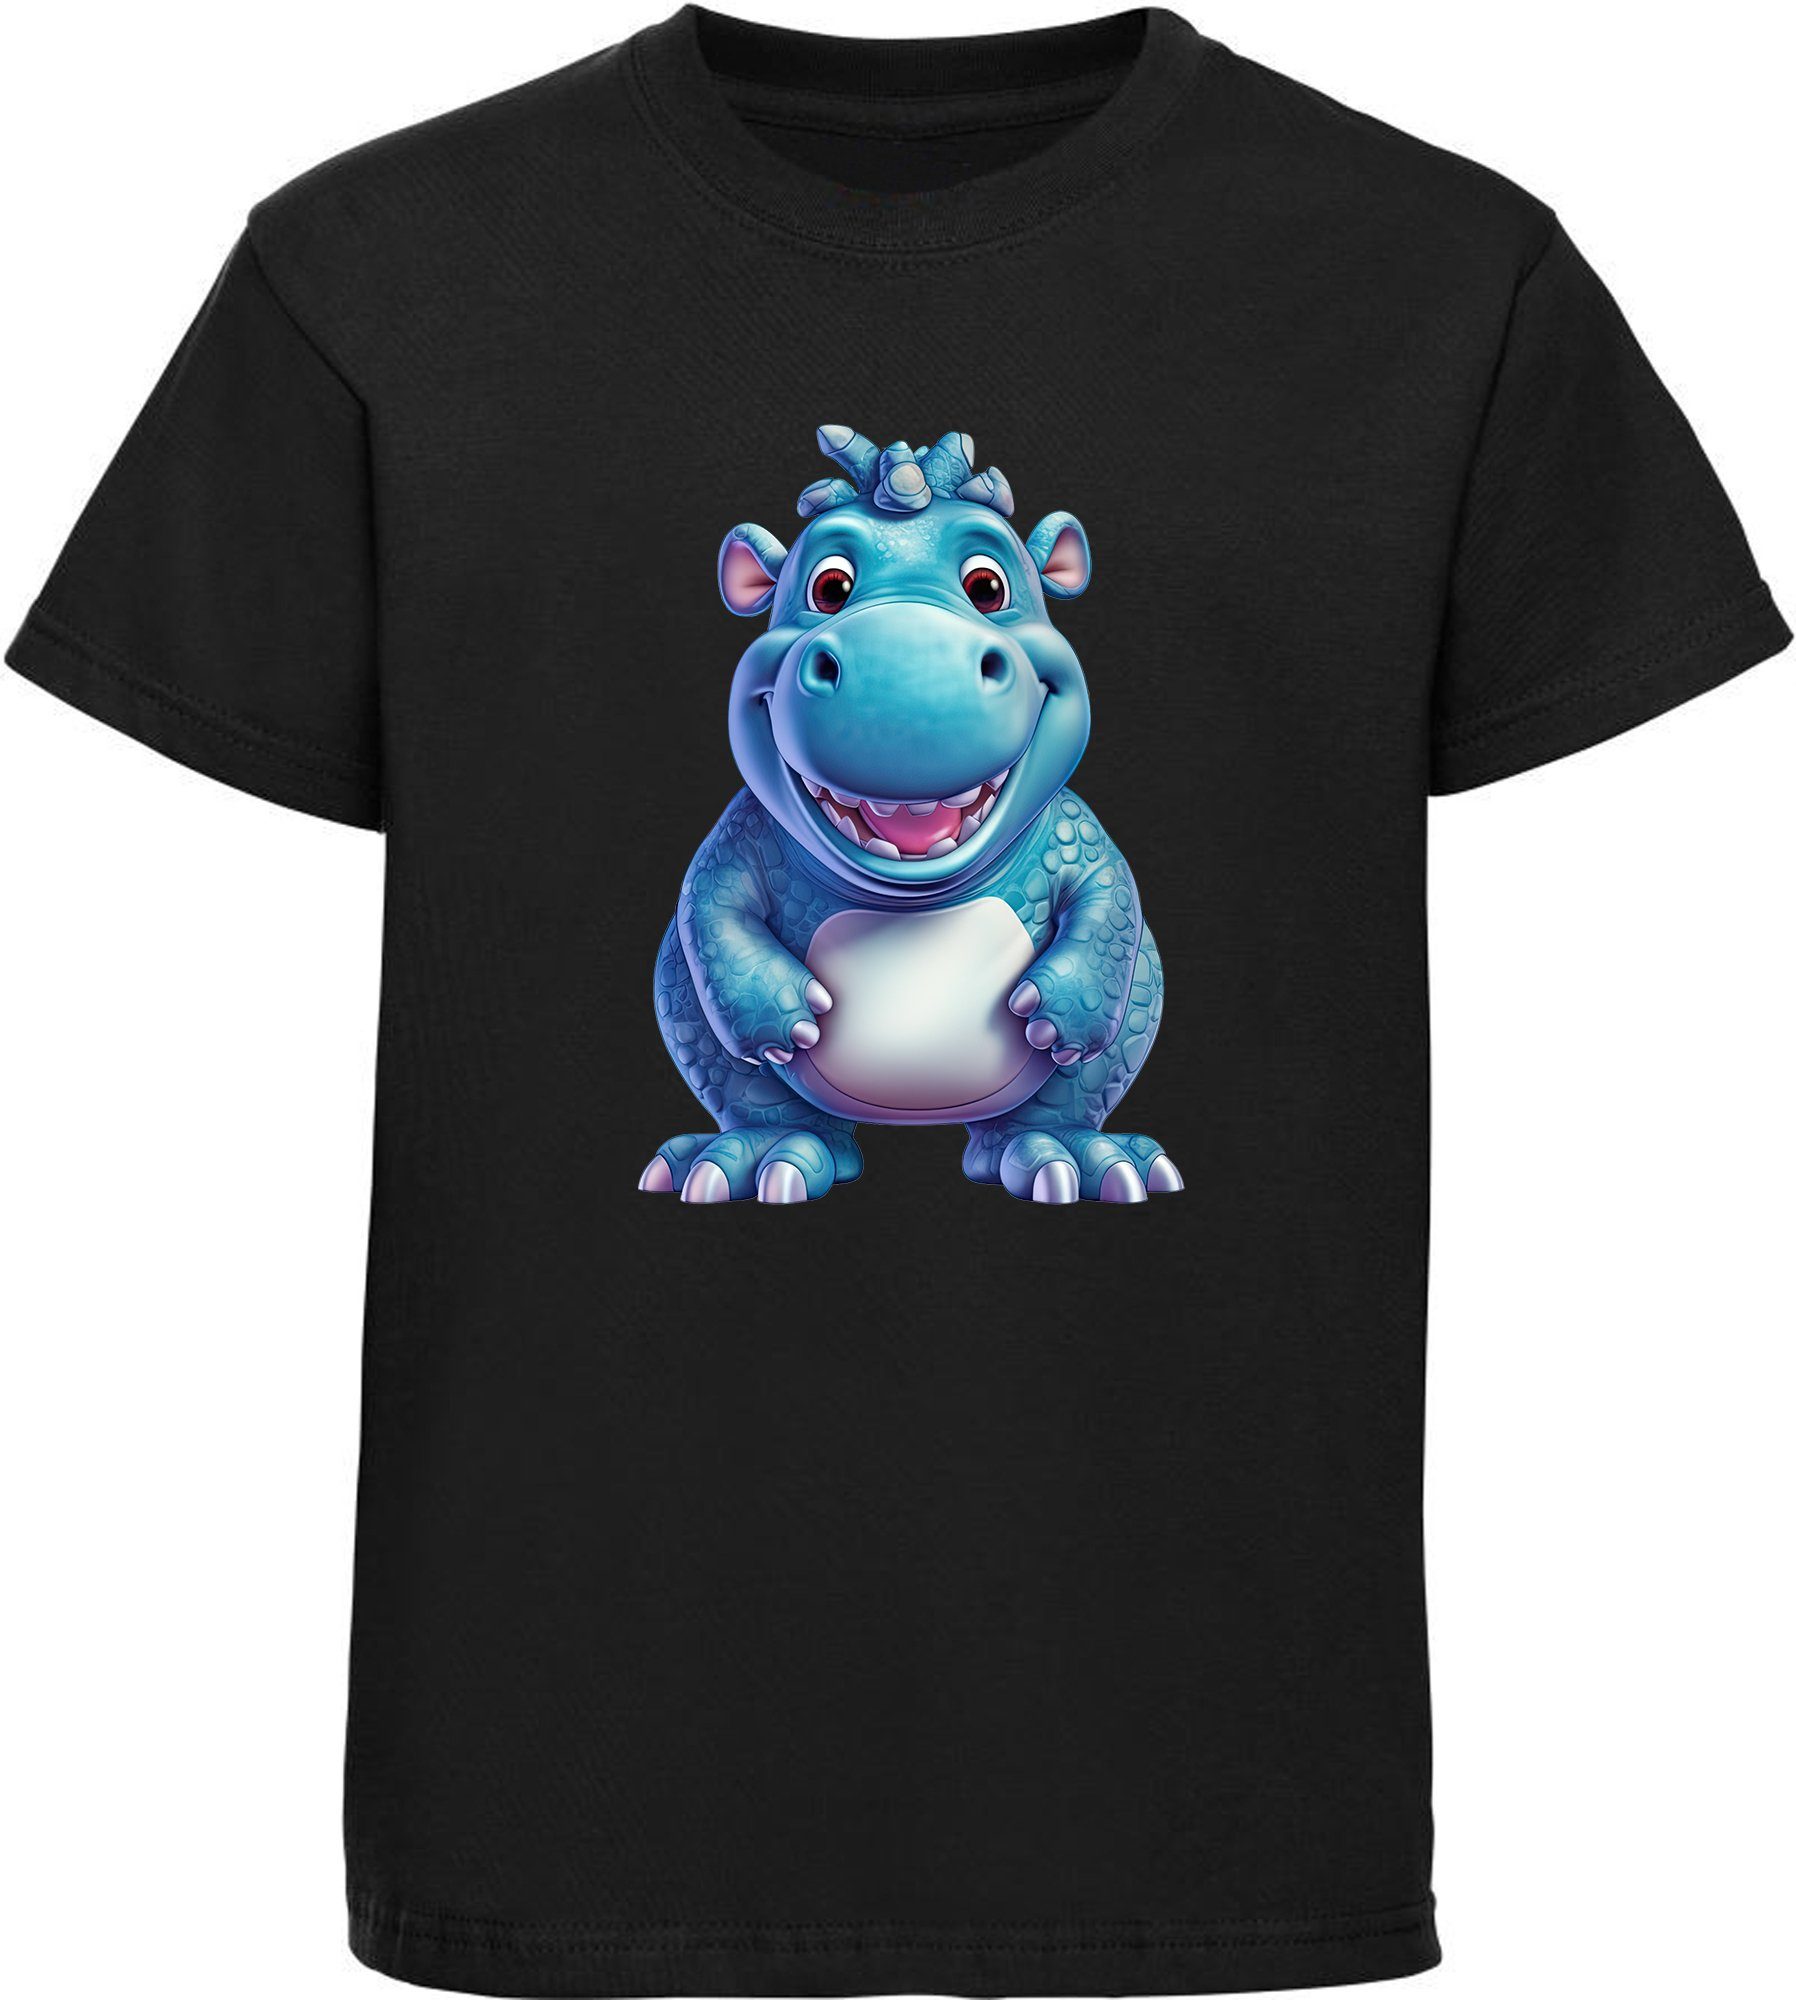 MyDesign24 T-Shirt Kinder schwarz - Baumwollshirt mit Aufdruck, Shirt Nilpferd Print Hippo Wildtier bedruckt Baby i274